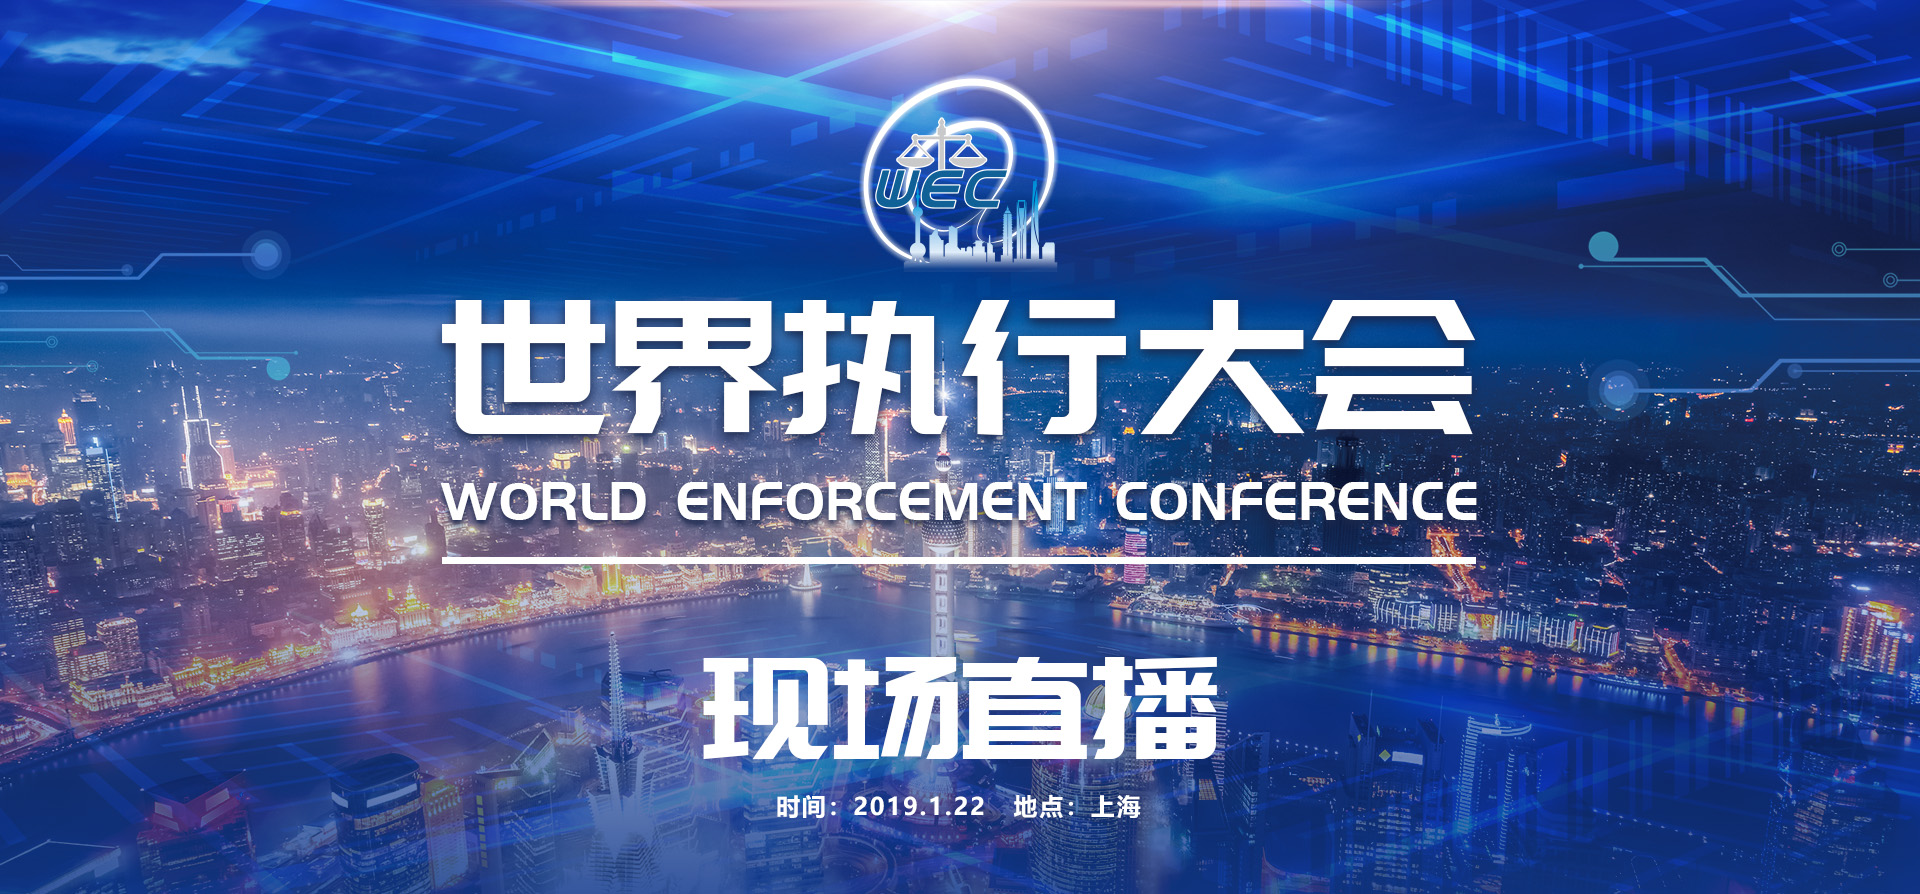 ​2019年1月22日，世界執行大會將在上海舉辦，聚焦“強制執行的現代化發展”。_fororder_微信圖片_20190122081310